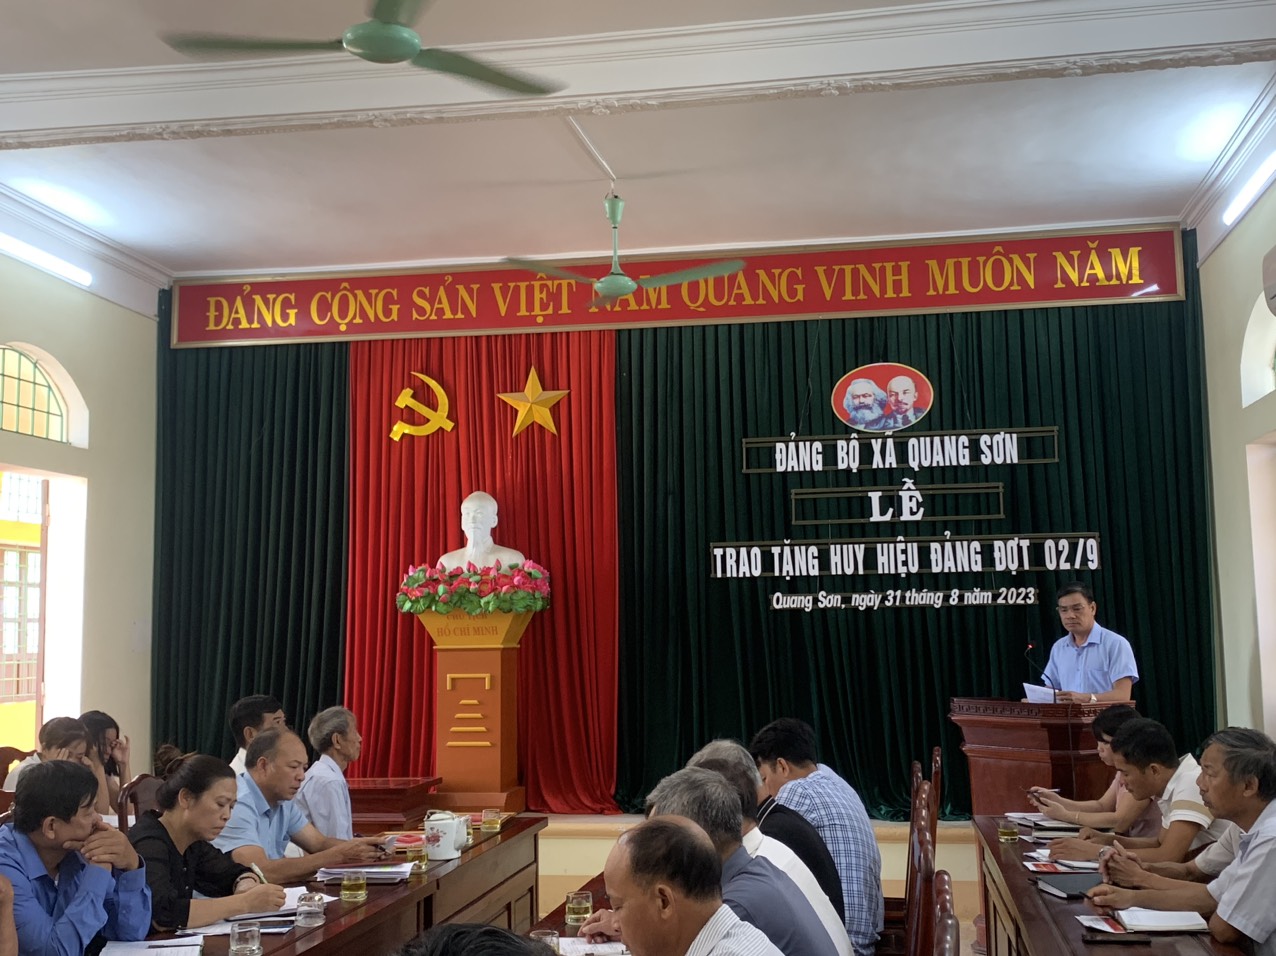 Đảng uỷ xã Quang Sơn long trọng tổ chức lễ trao tặng Huy hiệu Đảng đợt 2/9/2023